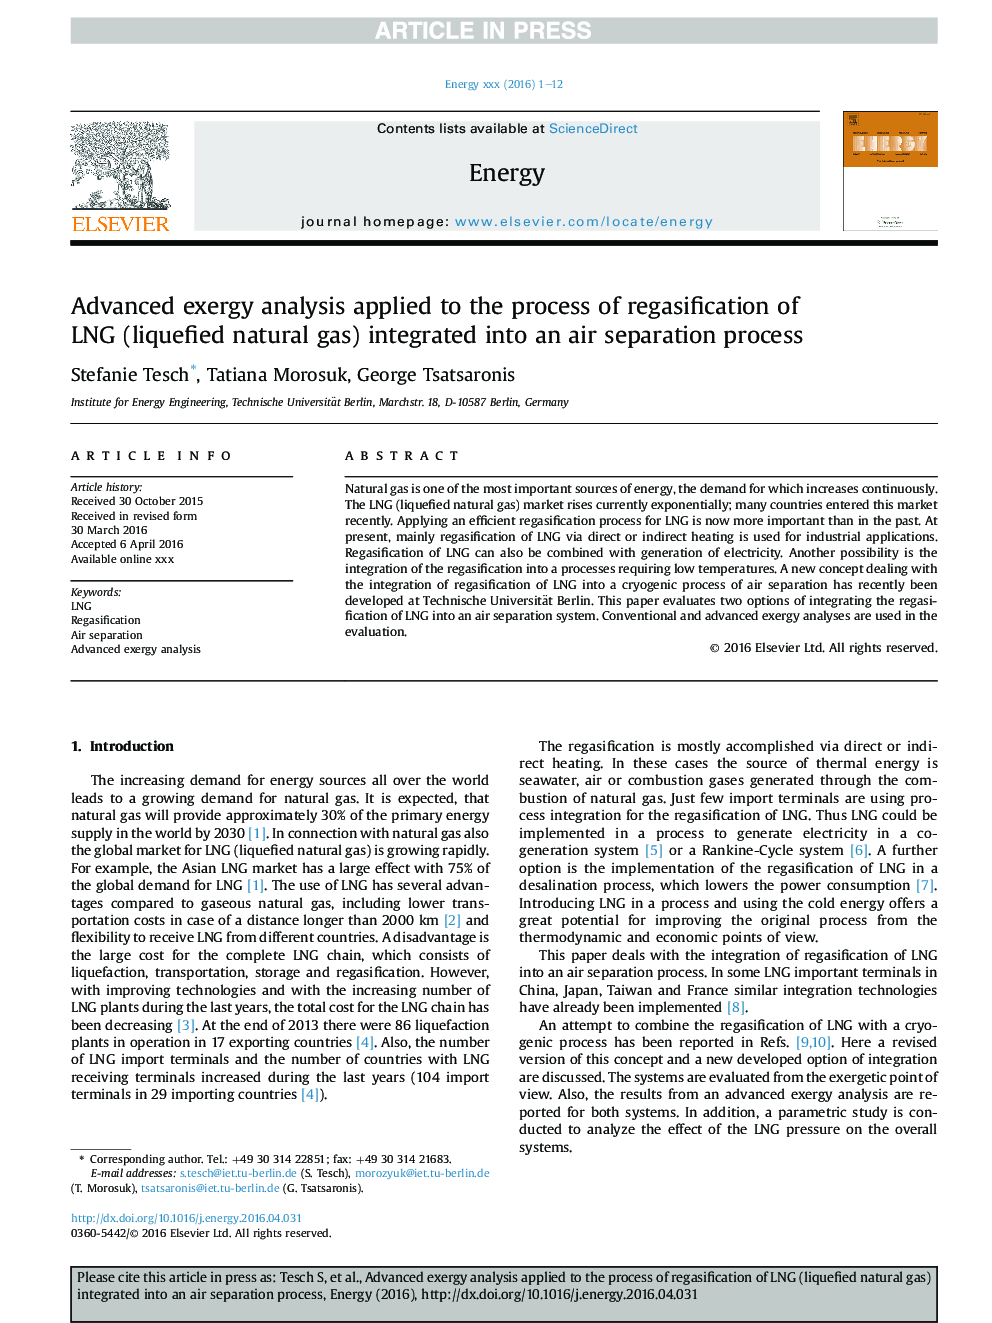 تجزیه و تحلیل اگزرگمی پیشرفته به روند مجدد گاز مجدد گاز طبیعی (گاز طبیعی مایع) که در یک فرایند جداسازی هوا 